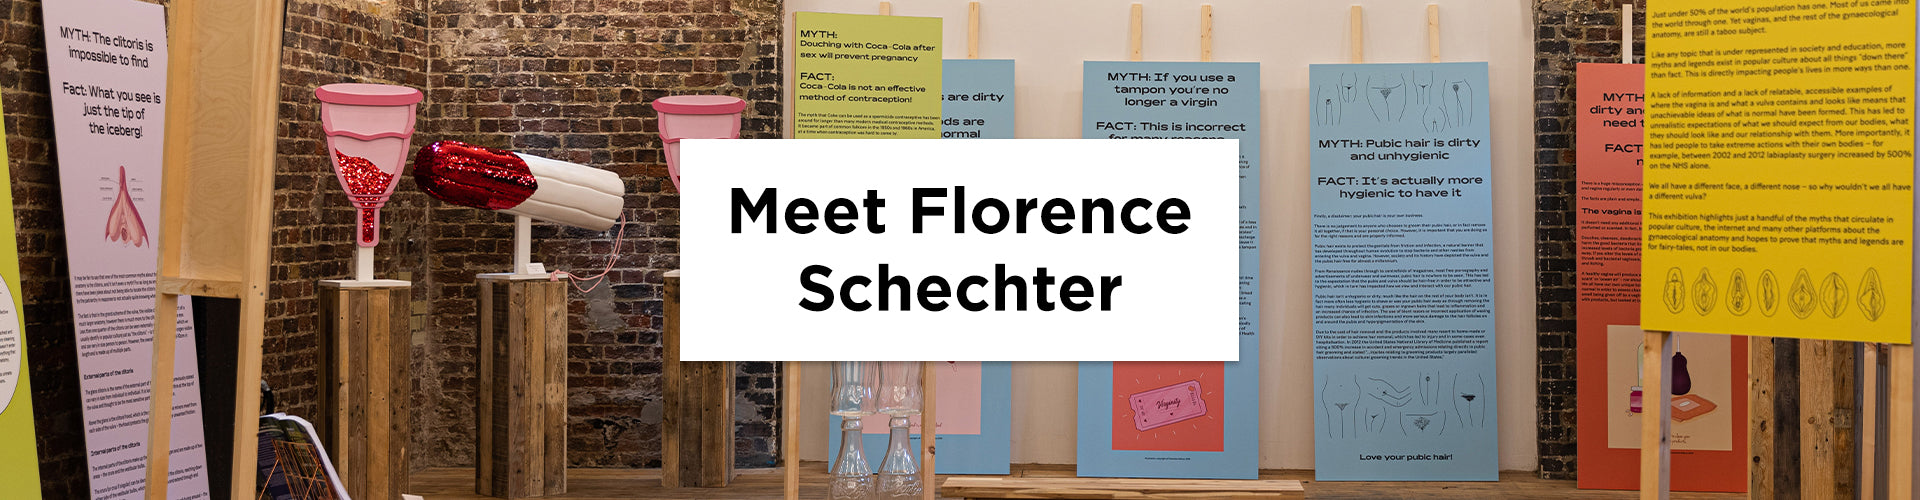 Meet Florence Schechter, founder of Vagina Museum